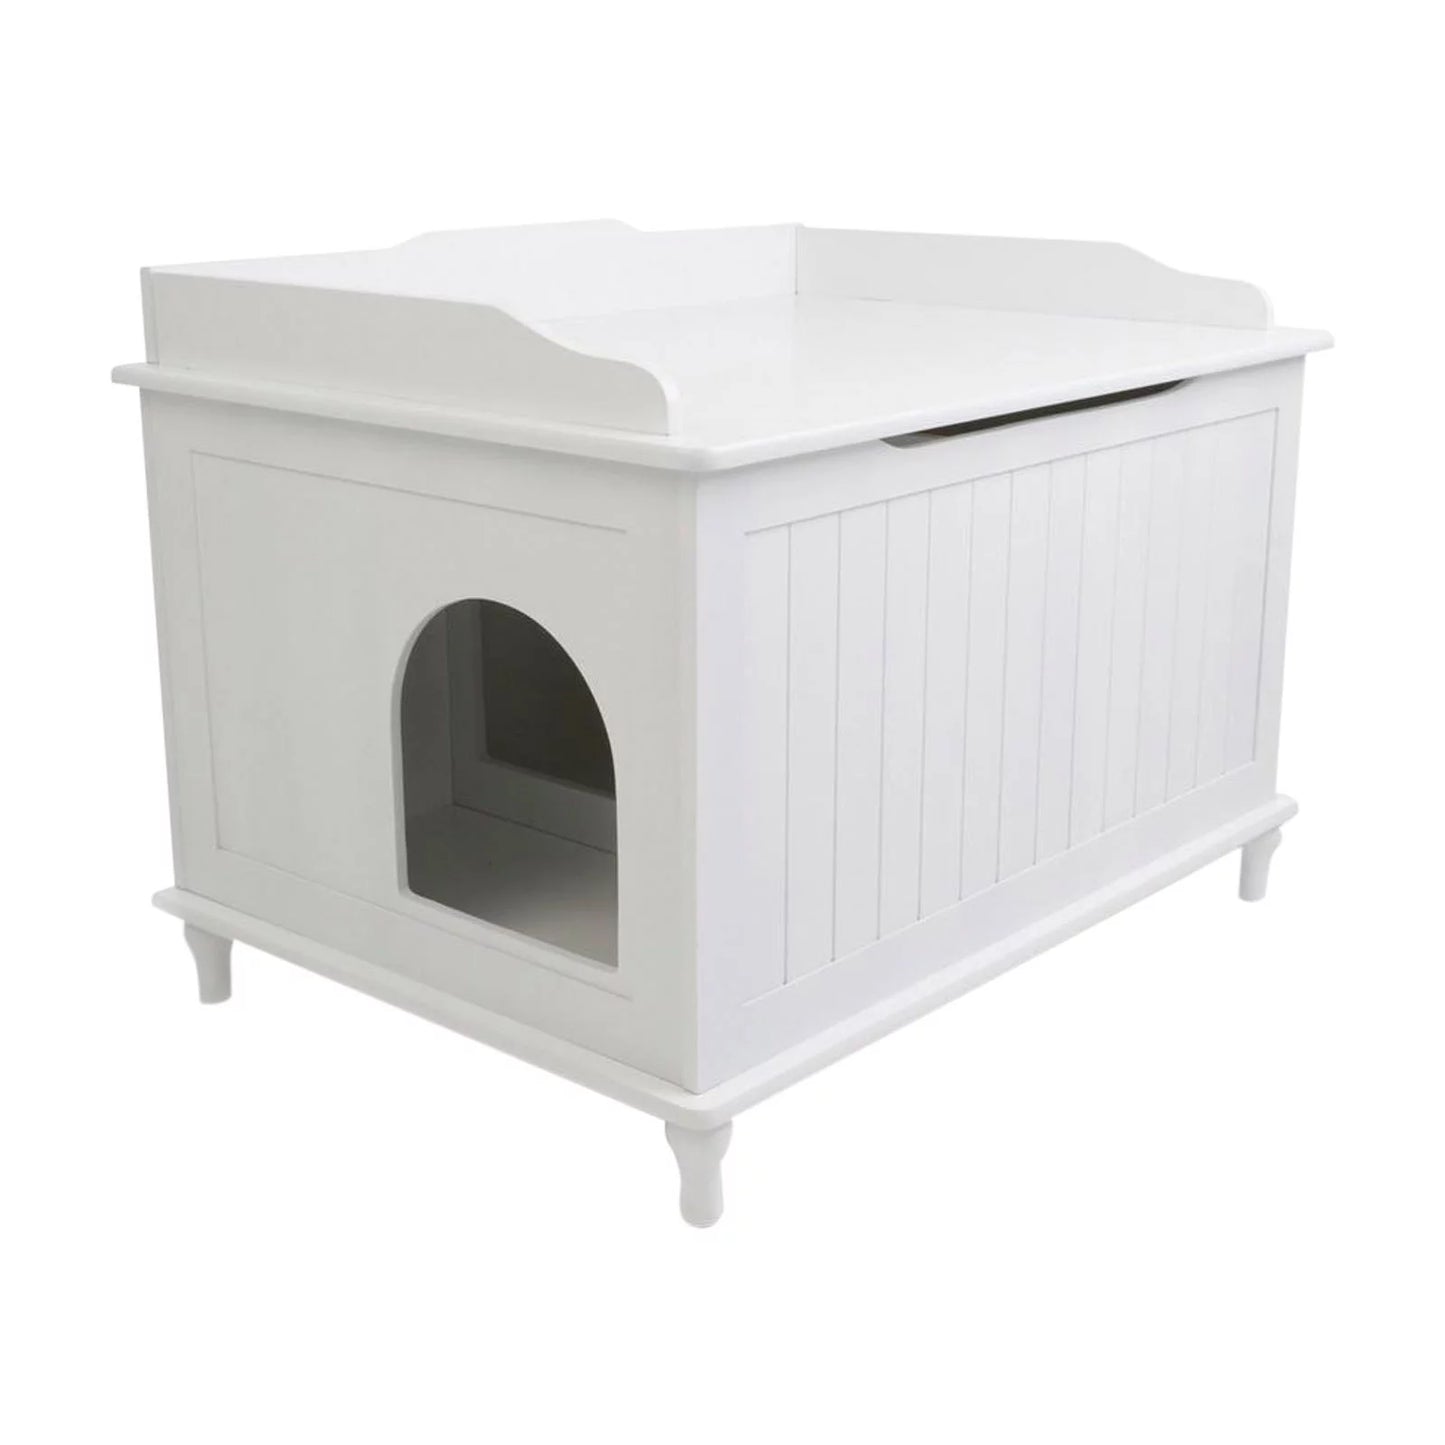 Designer Catbox Litter Box Enclosure Animals & Pet Supplies > Pet Supplies > Cat Supplies > Cat Furniture Designer Catbox LLC 29.1L x 20.6W x 22H in. (Large) Black 